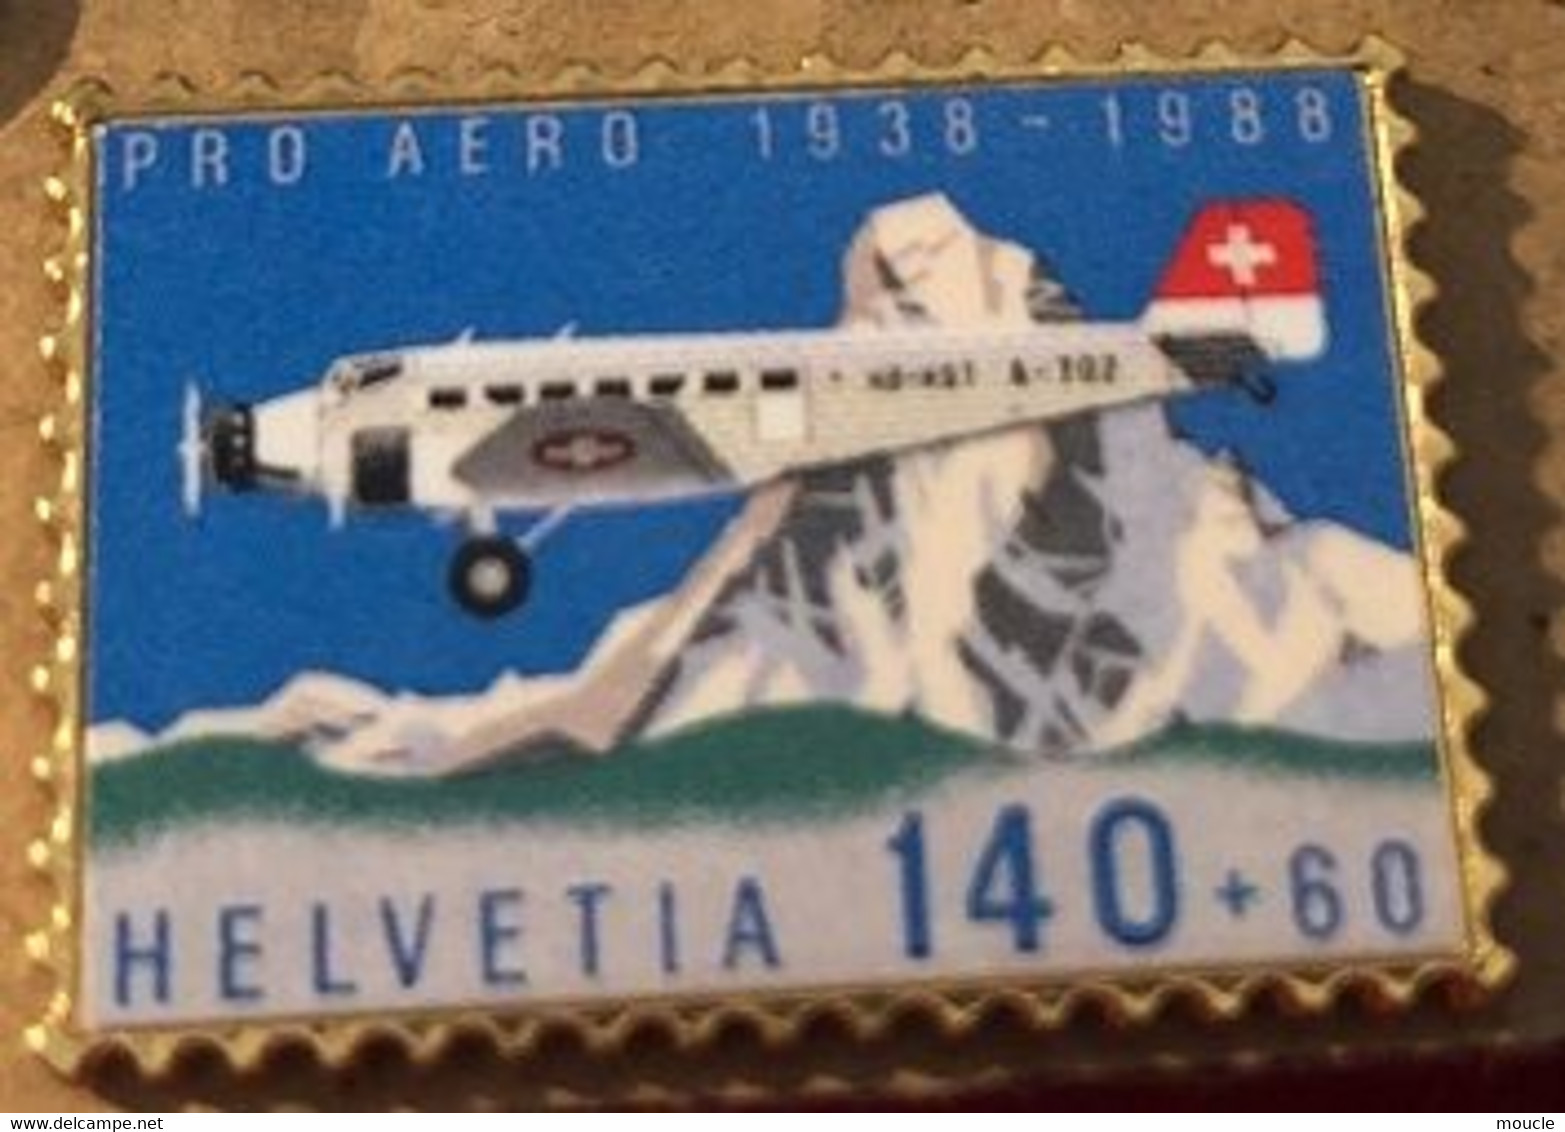 AVION - PLANE - FLUGZEUG - AEREO - HELVETIA 140+60 - CERVIN - PRO AERO 1938/1988  - SUISSE - SCHWEIZ -SWITZERLAND-(BLEU) - Airplanes